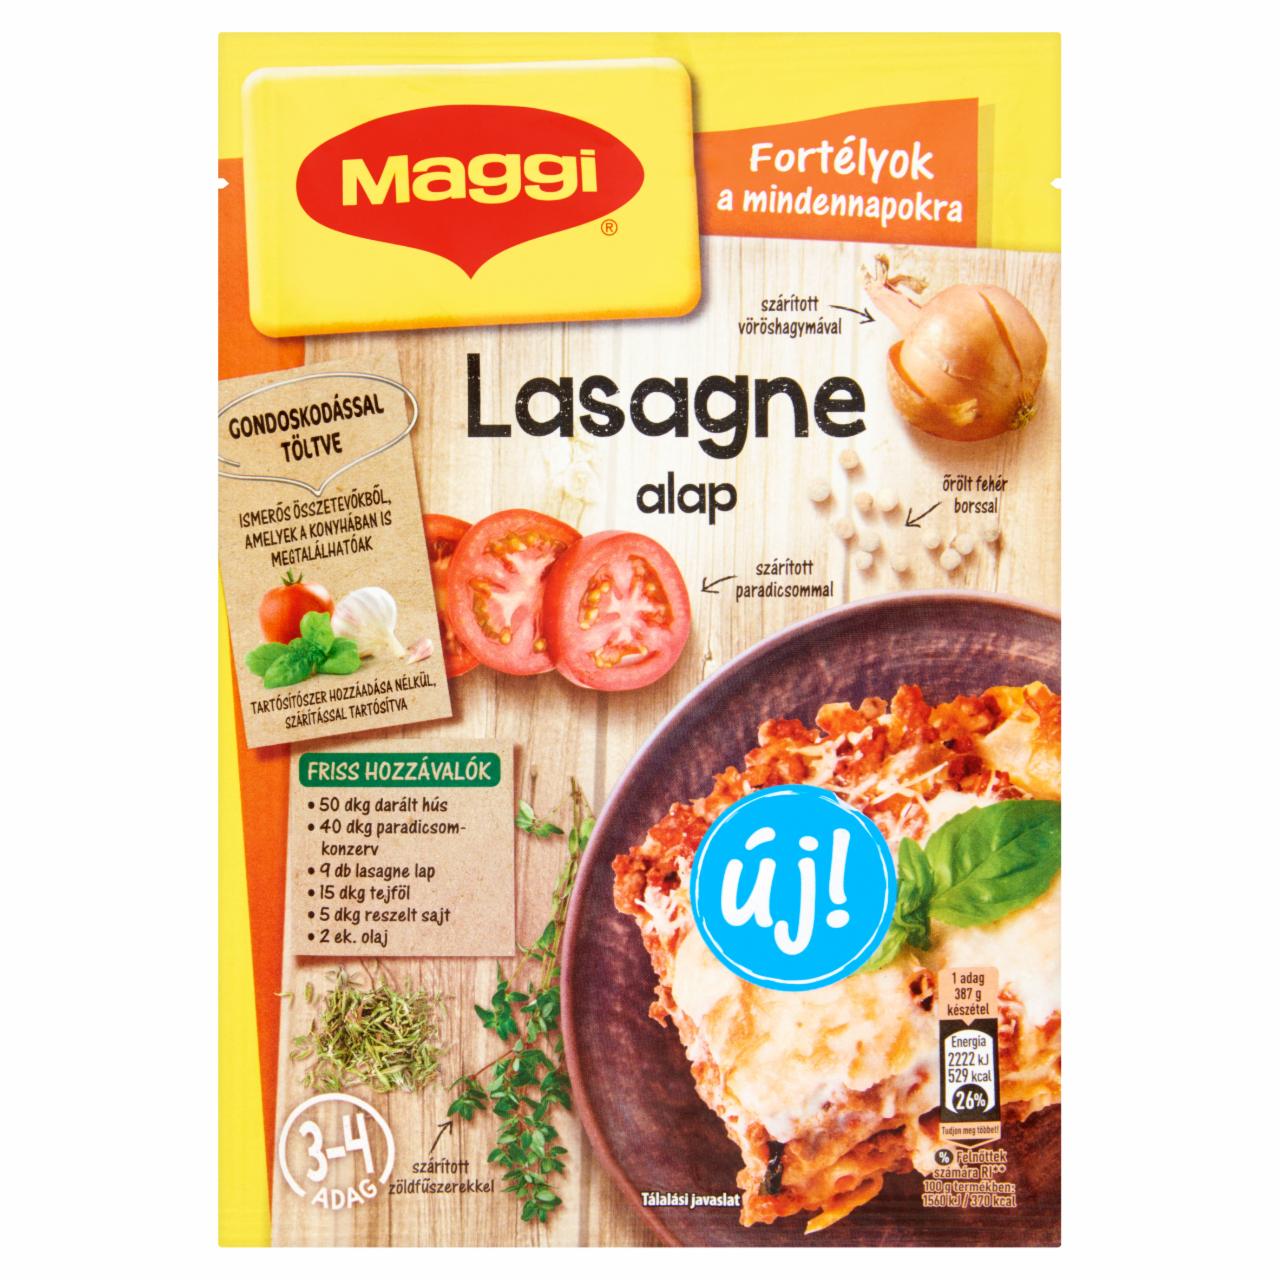 Képek - Maggi Fortélyok a mindennapokra Lasagne alap 45 g